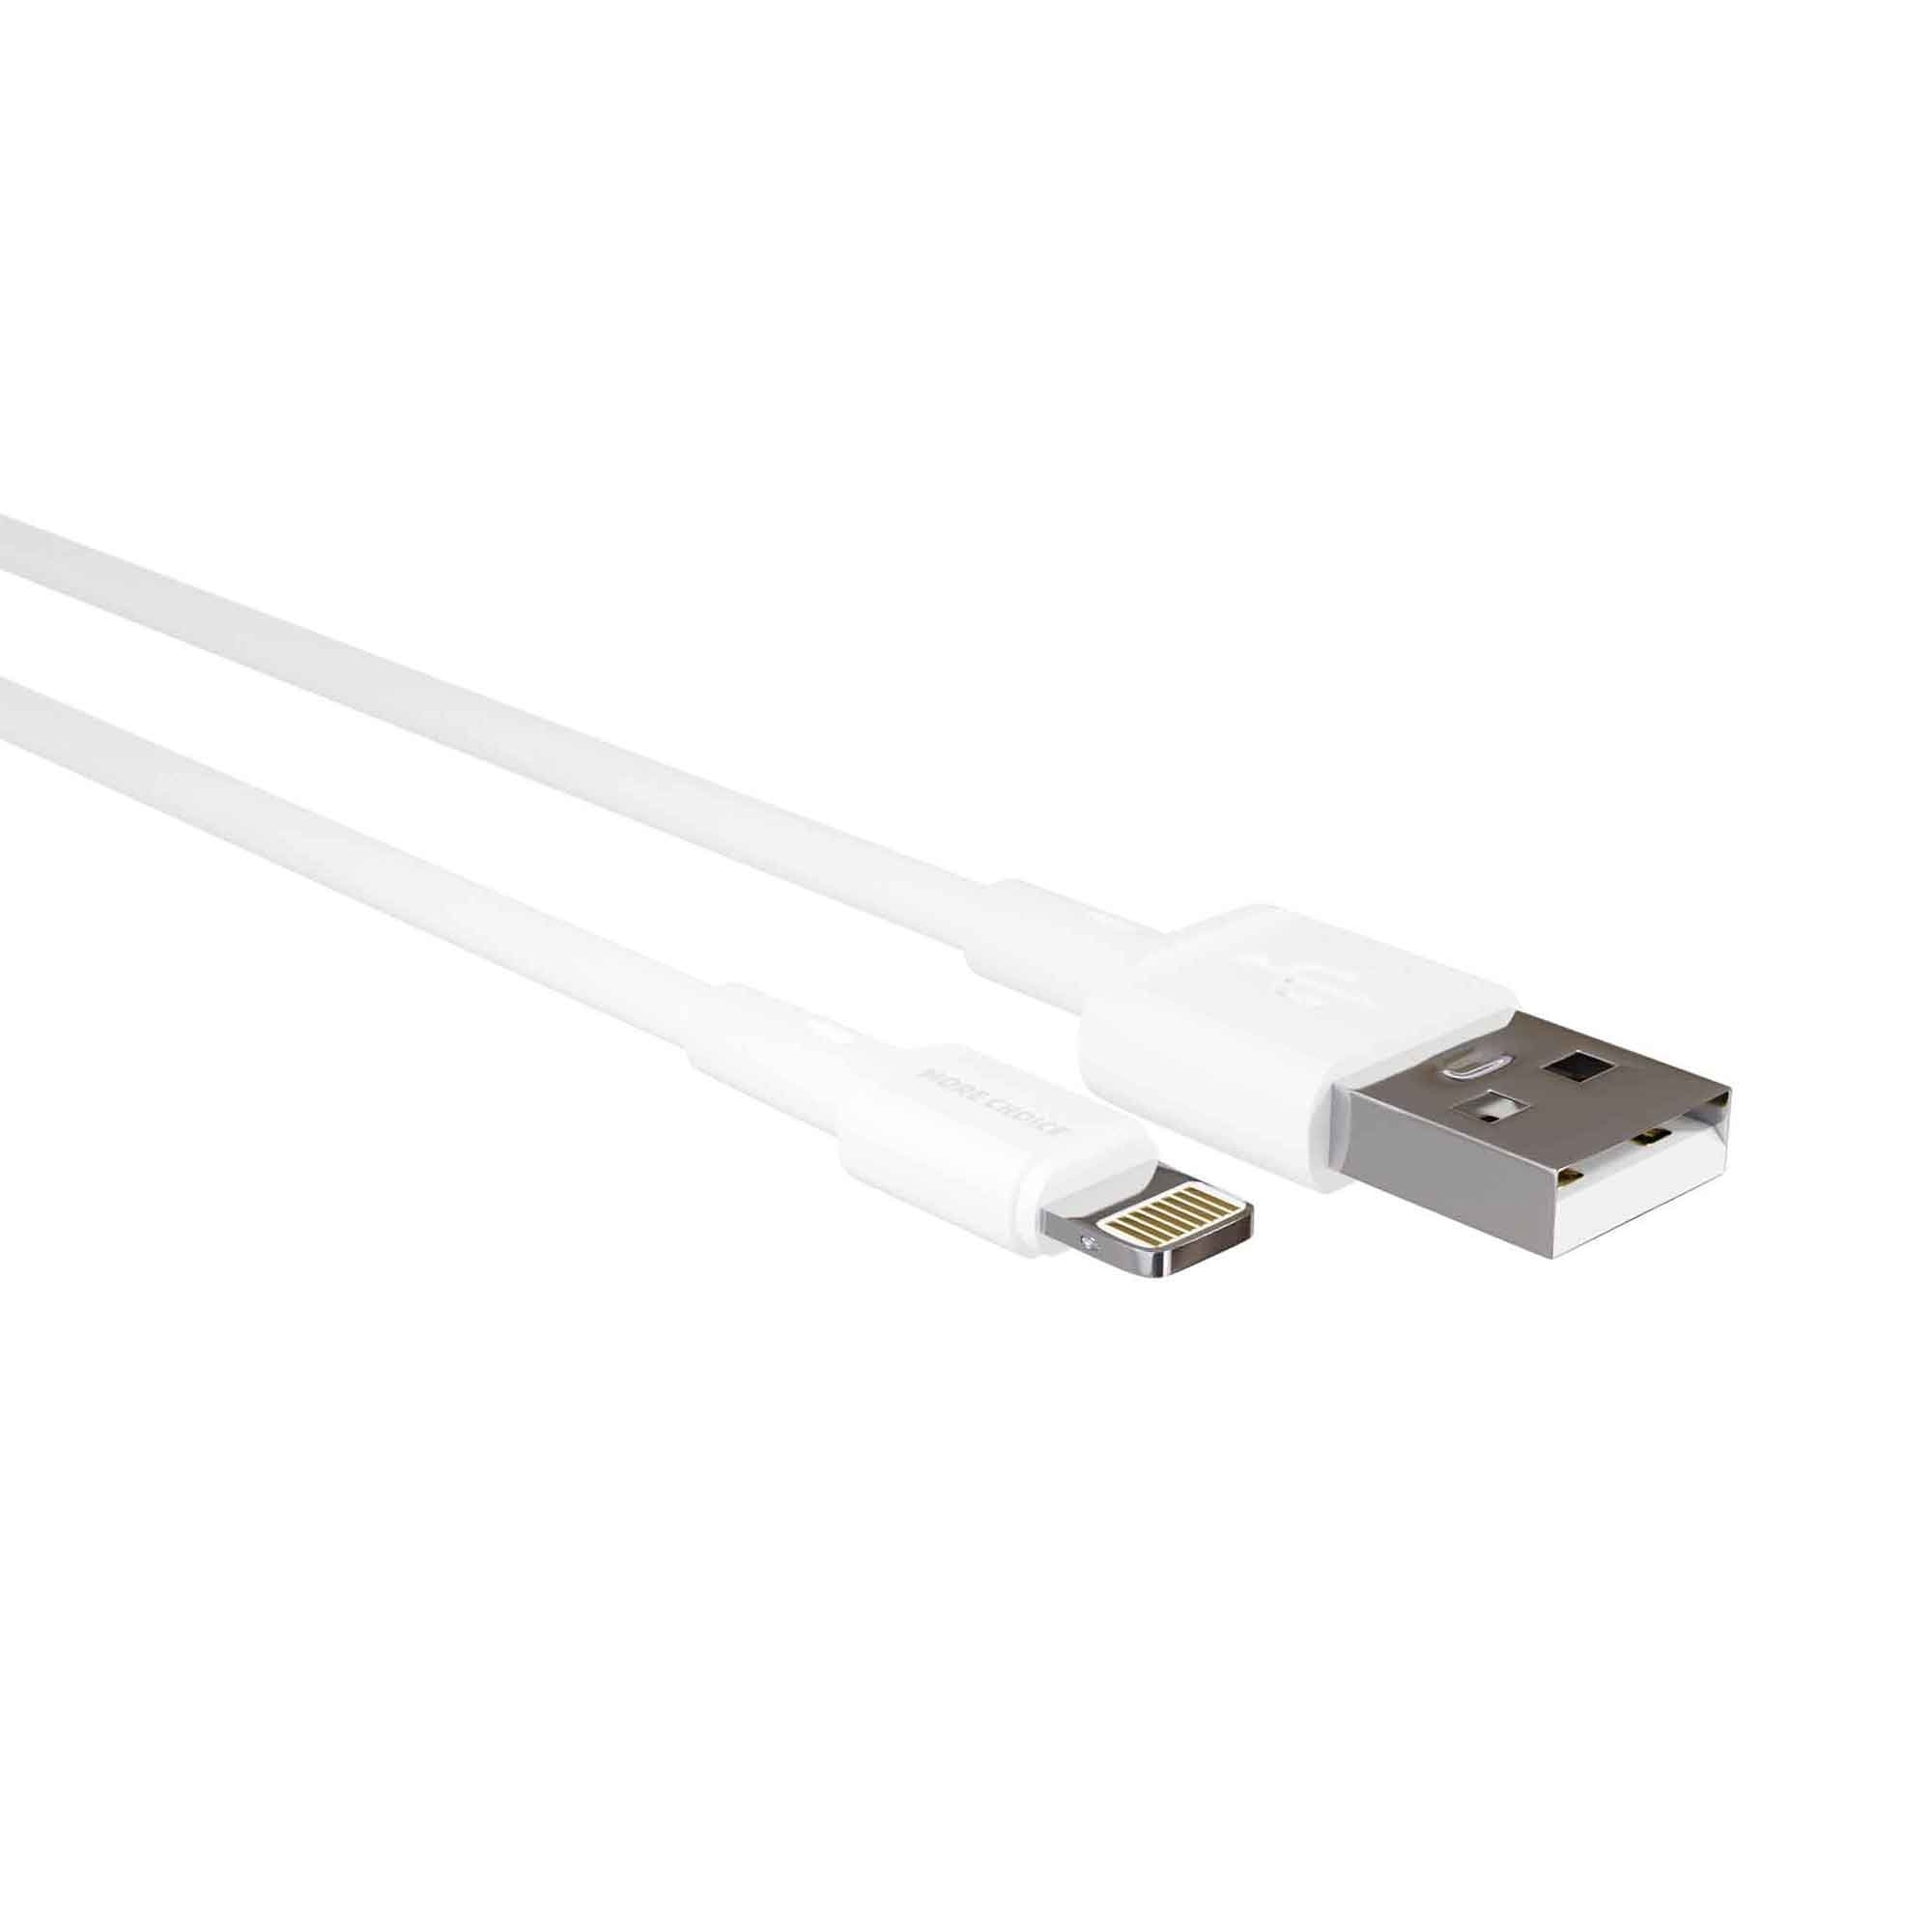 Дата-кабель More choice K14i TPE 2.0A Lightning 8-pin White USB цена и фото